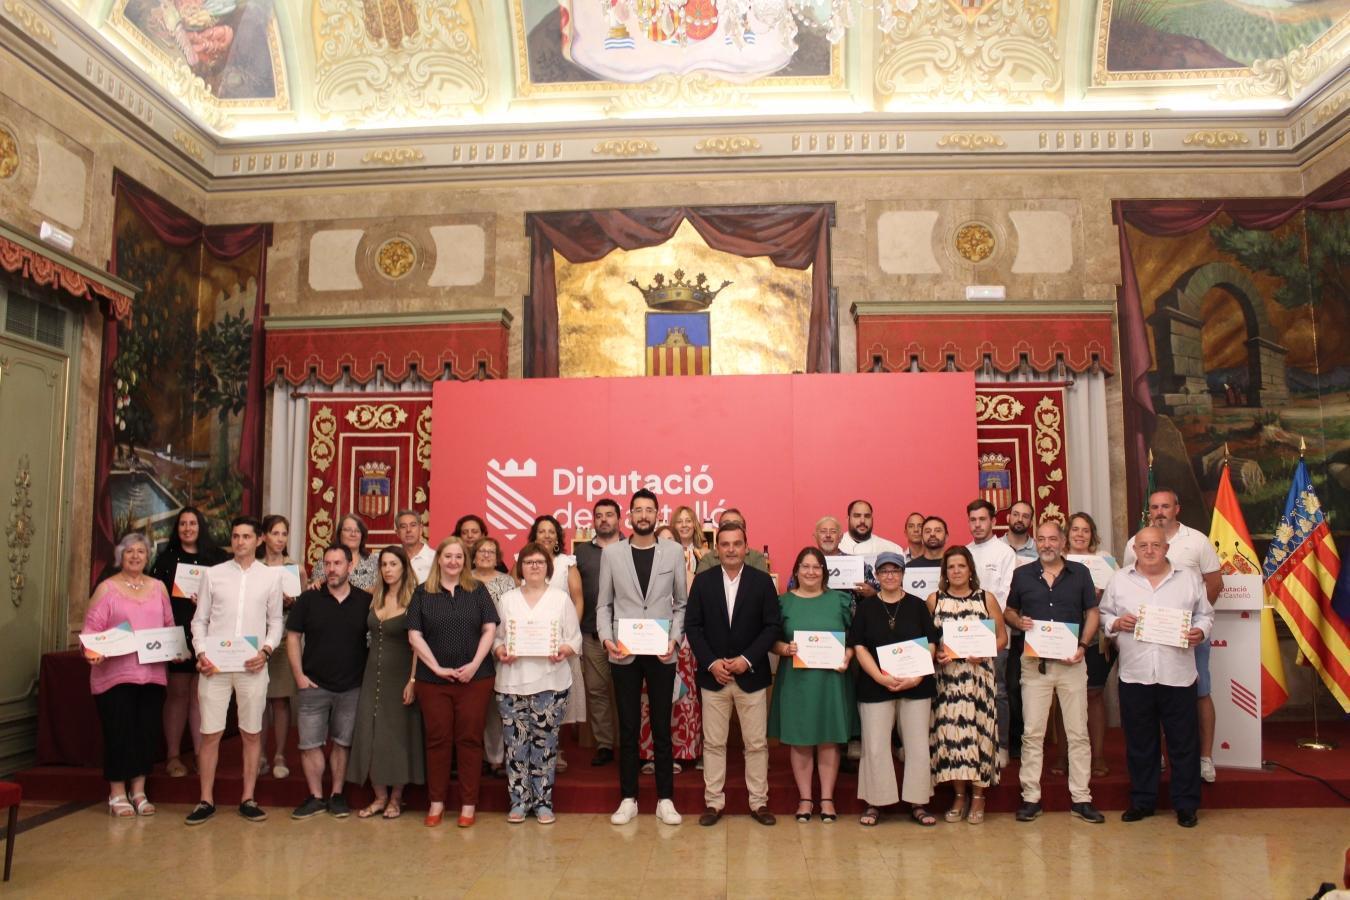 La Diputación de Castellón suma 20 nuevas empresas certificadas con la marca 'Castelló Ruta de Sabor' y apuesta por aumentar el apoyo a los productos locales